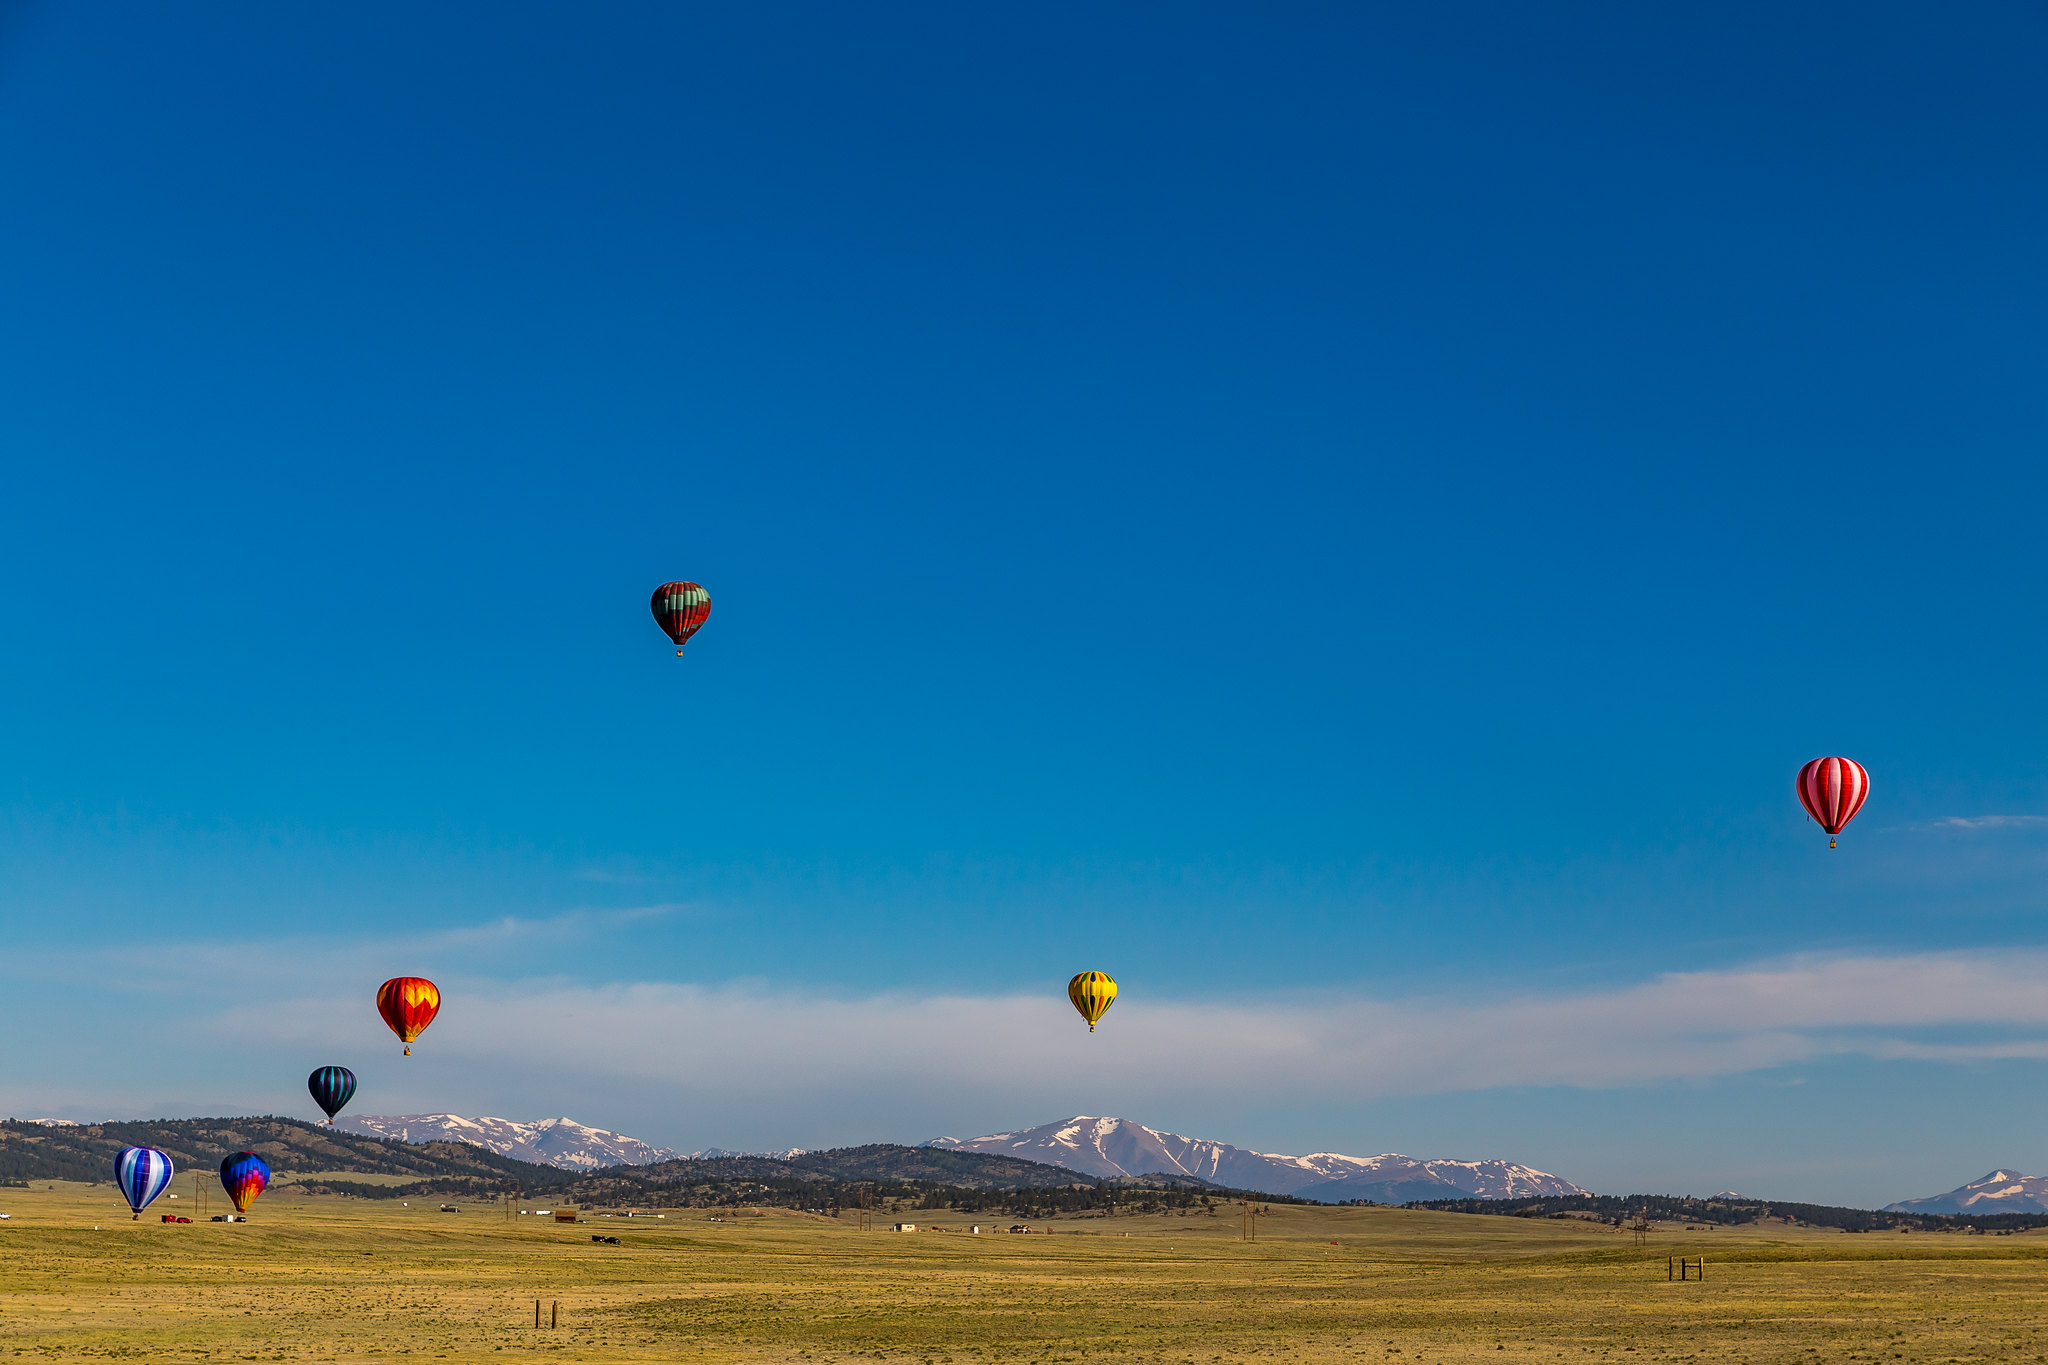 Enjoy a balloon ride over the Rocky Mountains